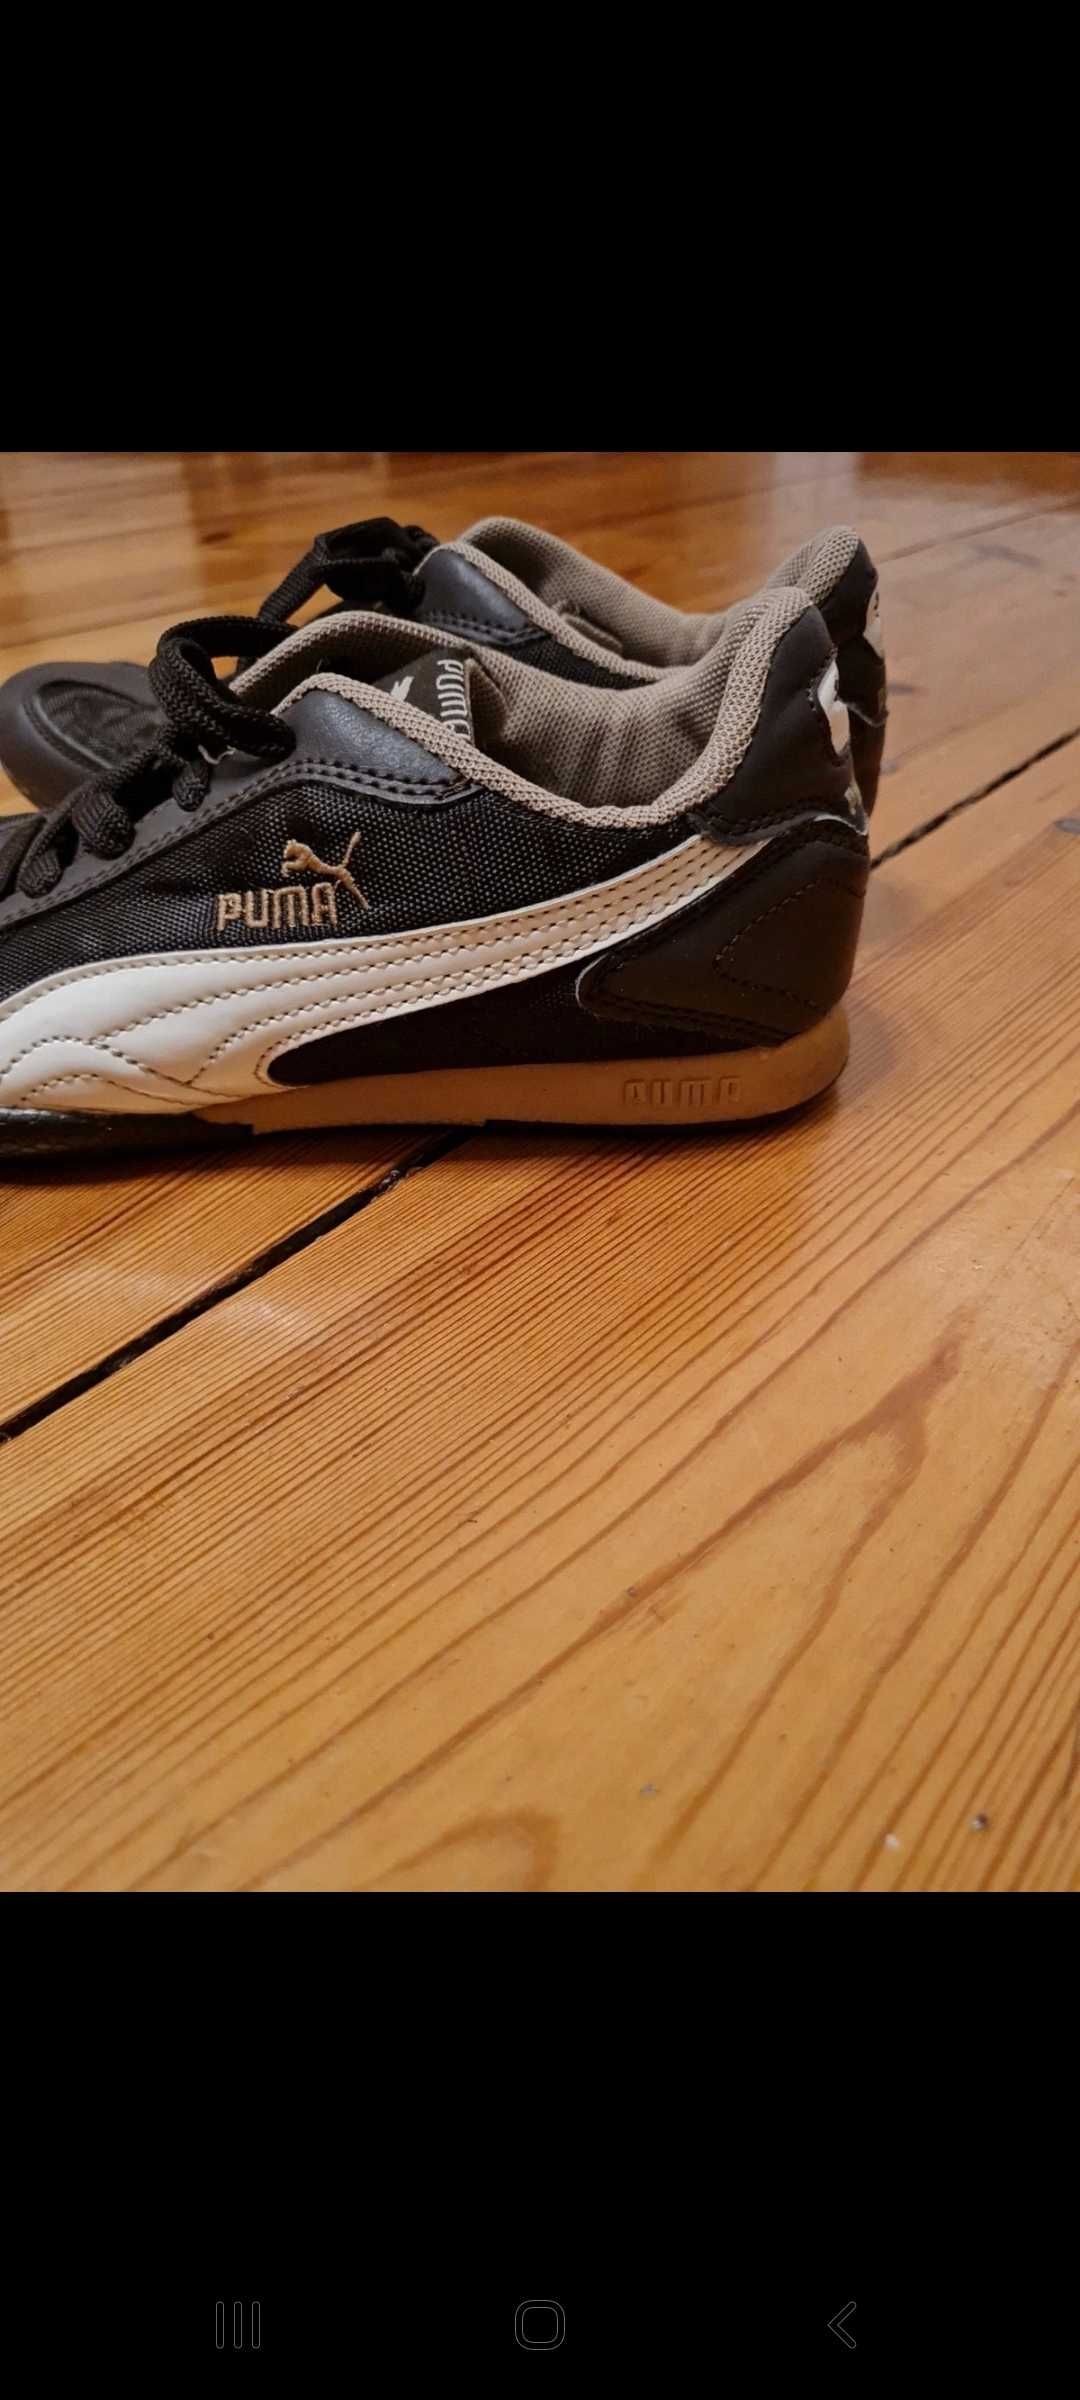 Puma buty damskie rozmiar 38